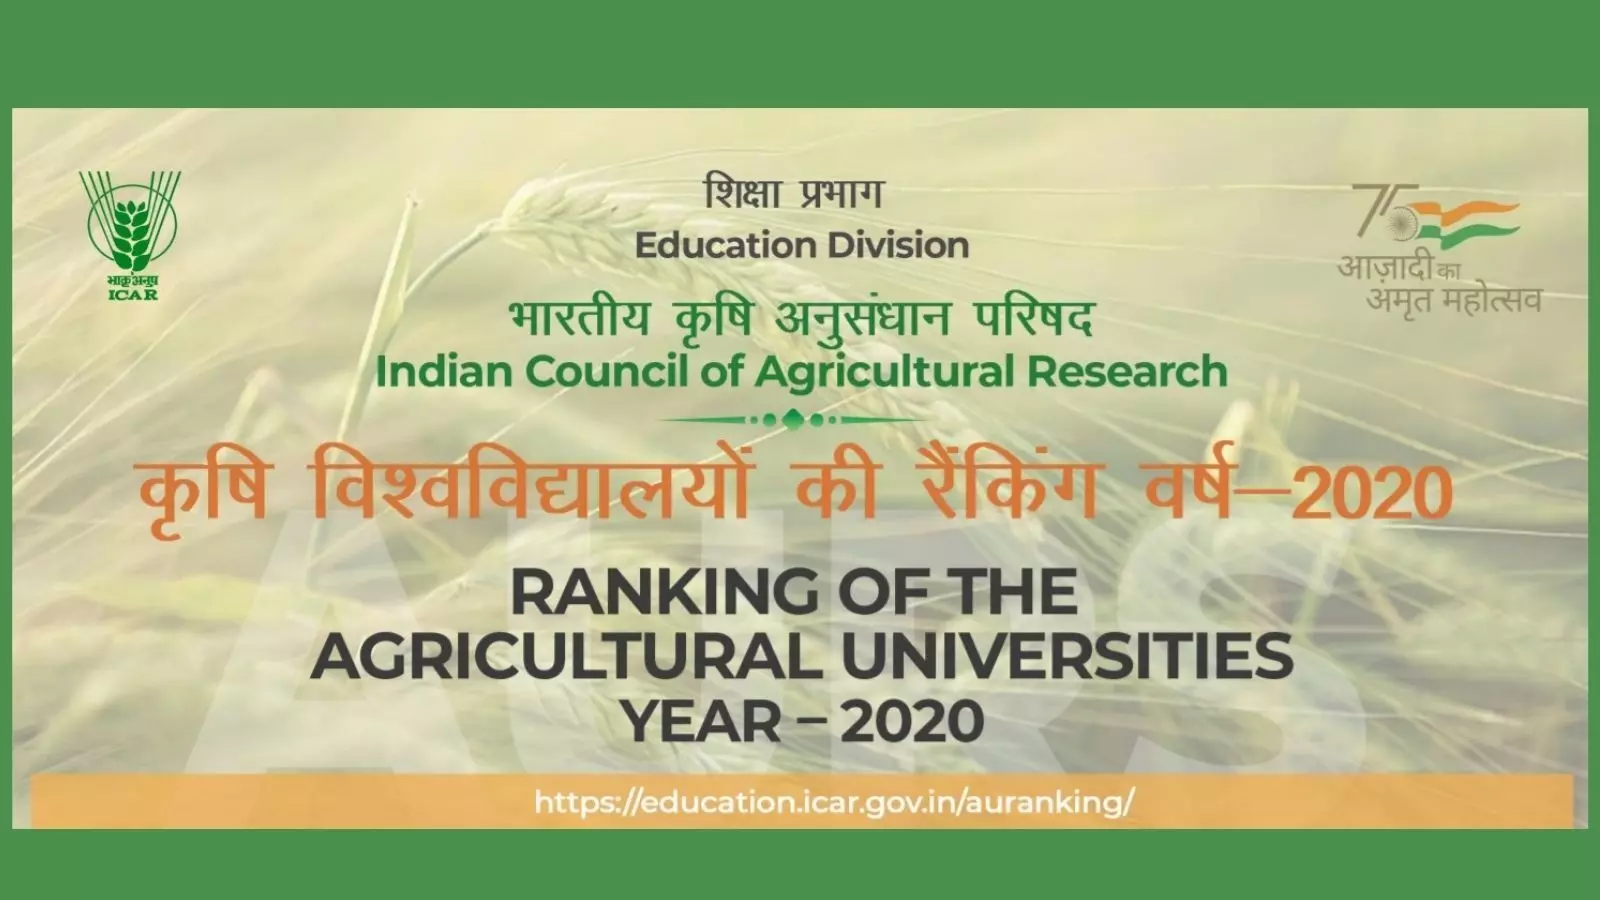 कृषि शिक्षा दिवस पर जारी हुई 67 कृषि विश्वविद्यालयों की रैंकिंग, जानिए टॉप 20 में है कौन सा विश्वविद्यालय